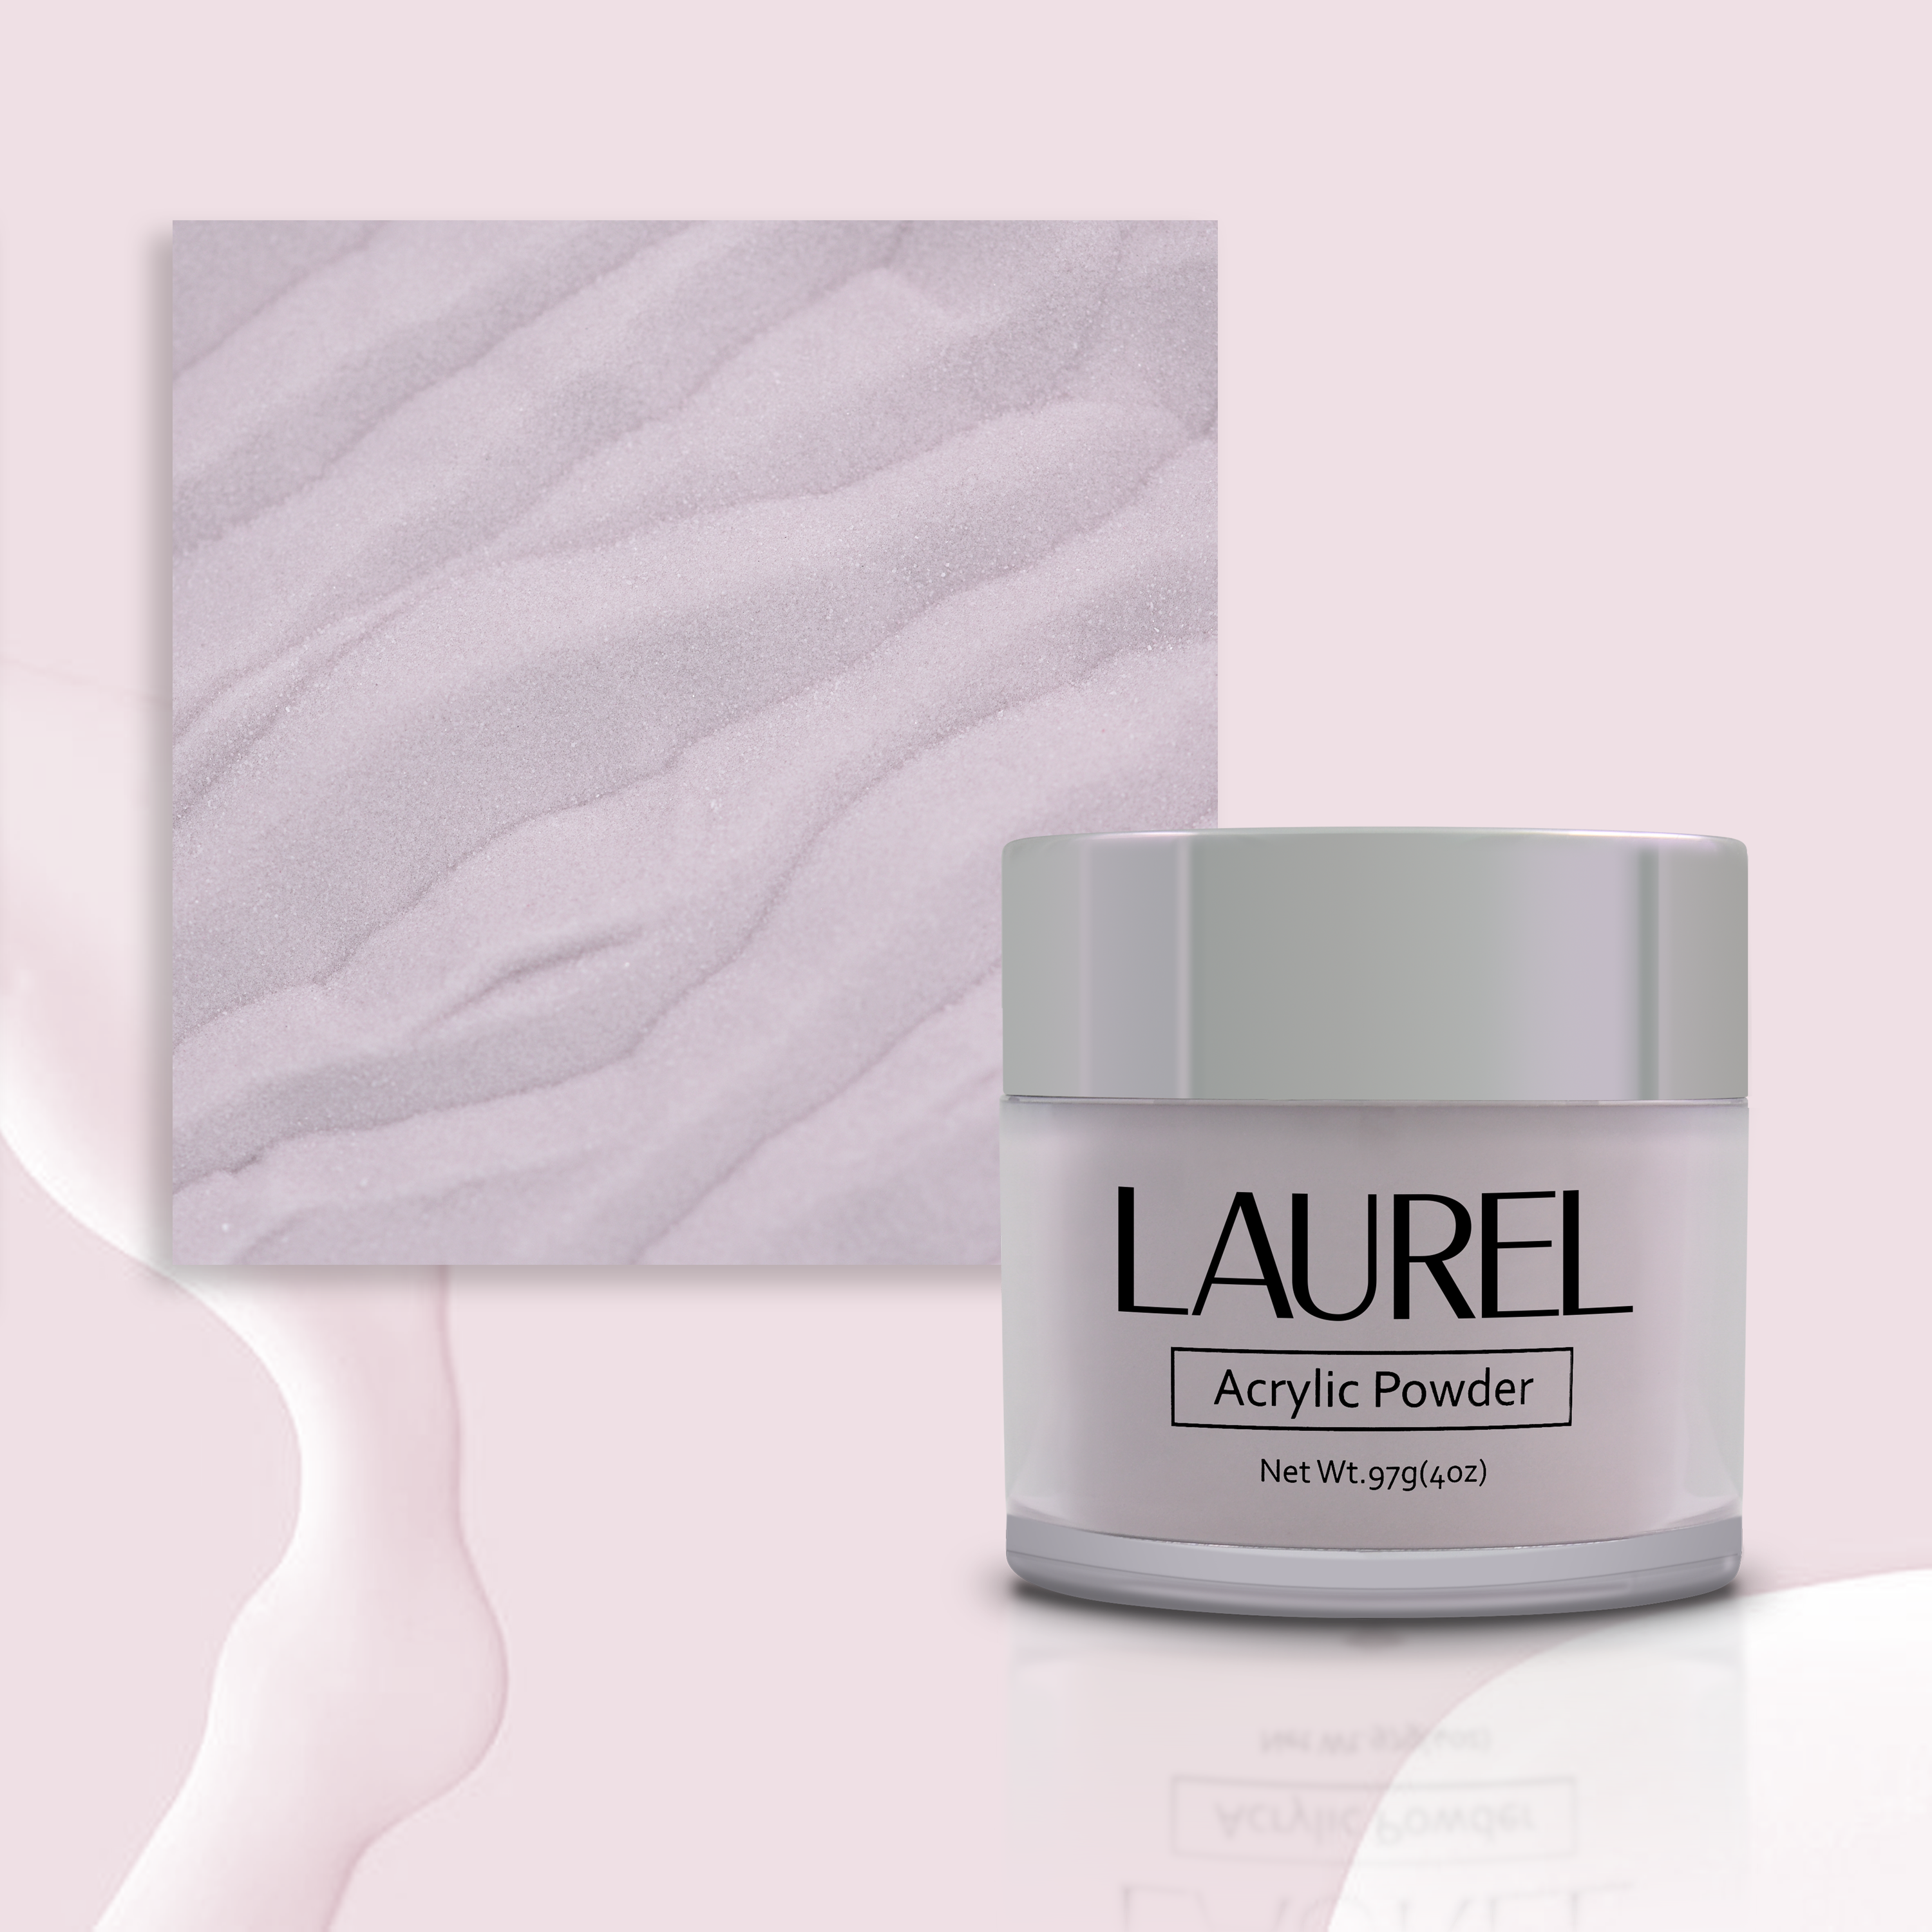 Laurel Acrylic Powder